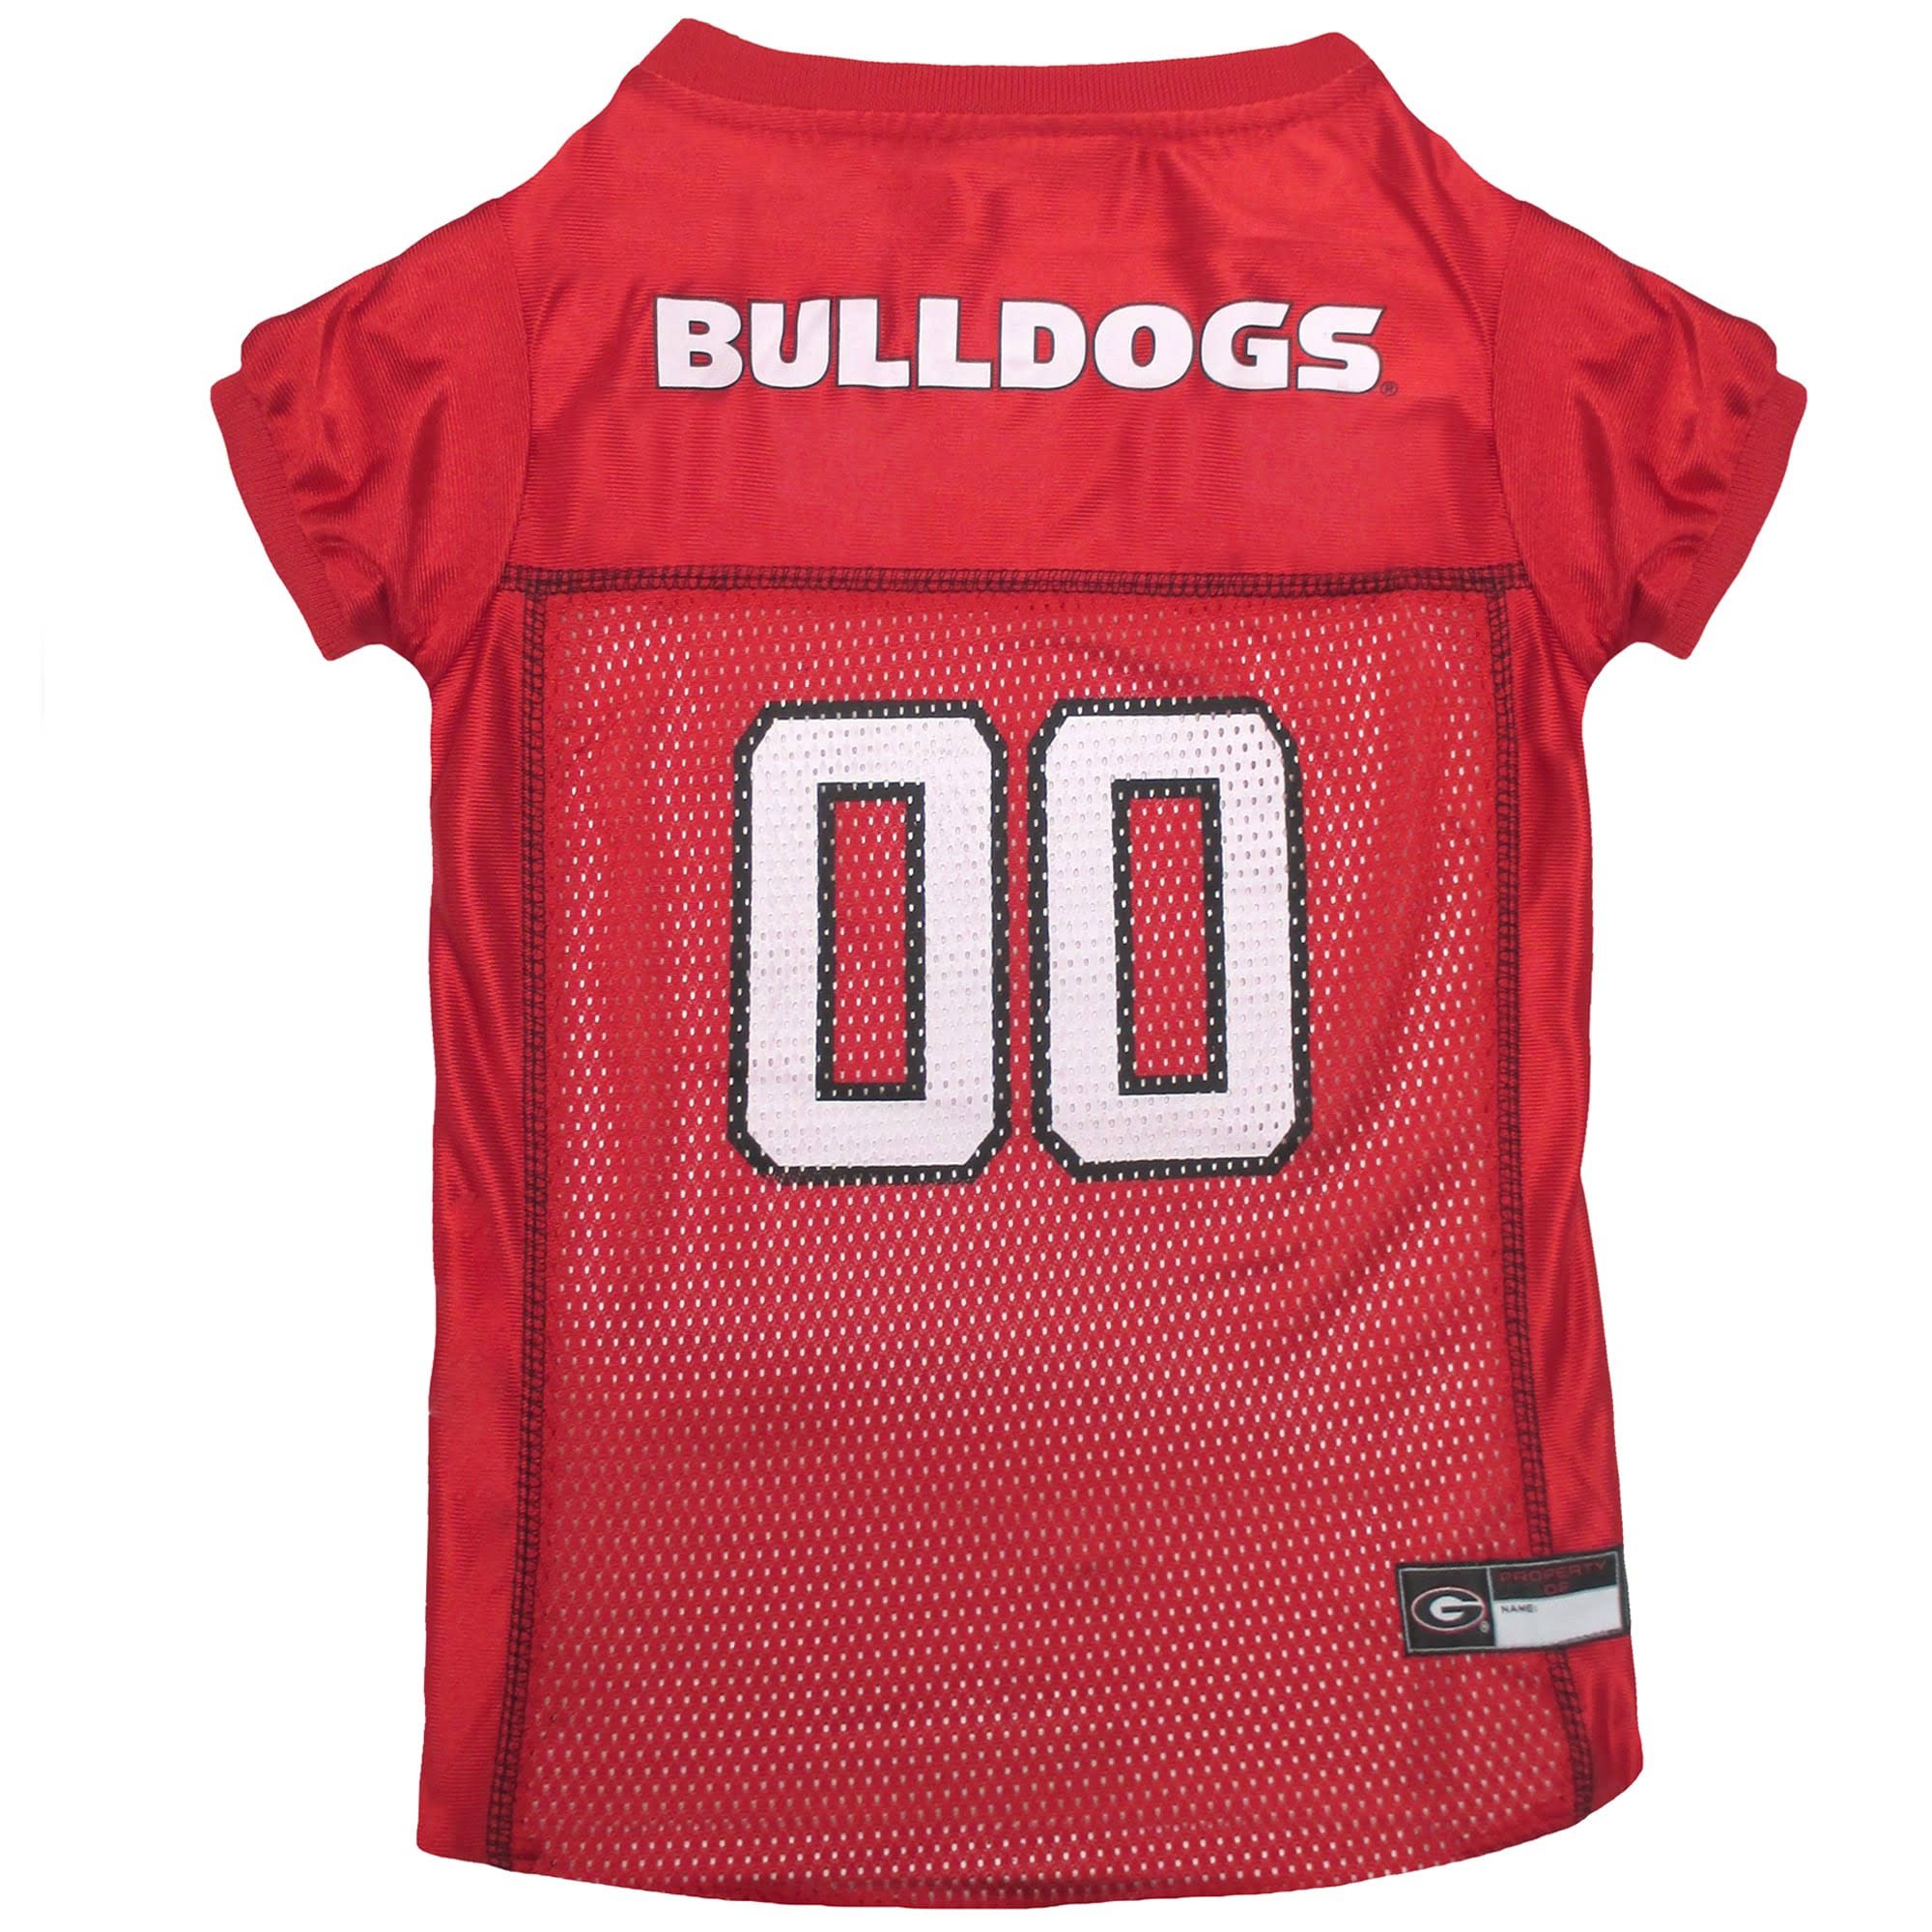 Georgia Bulldogs Dog Jersey